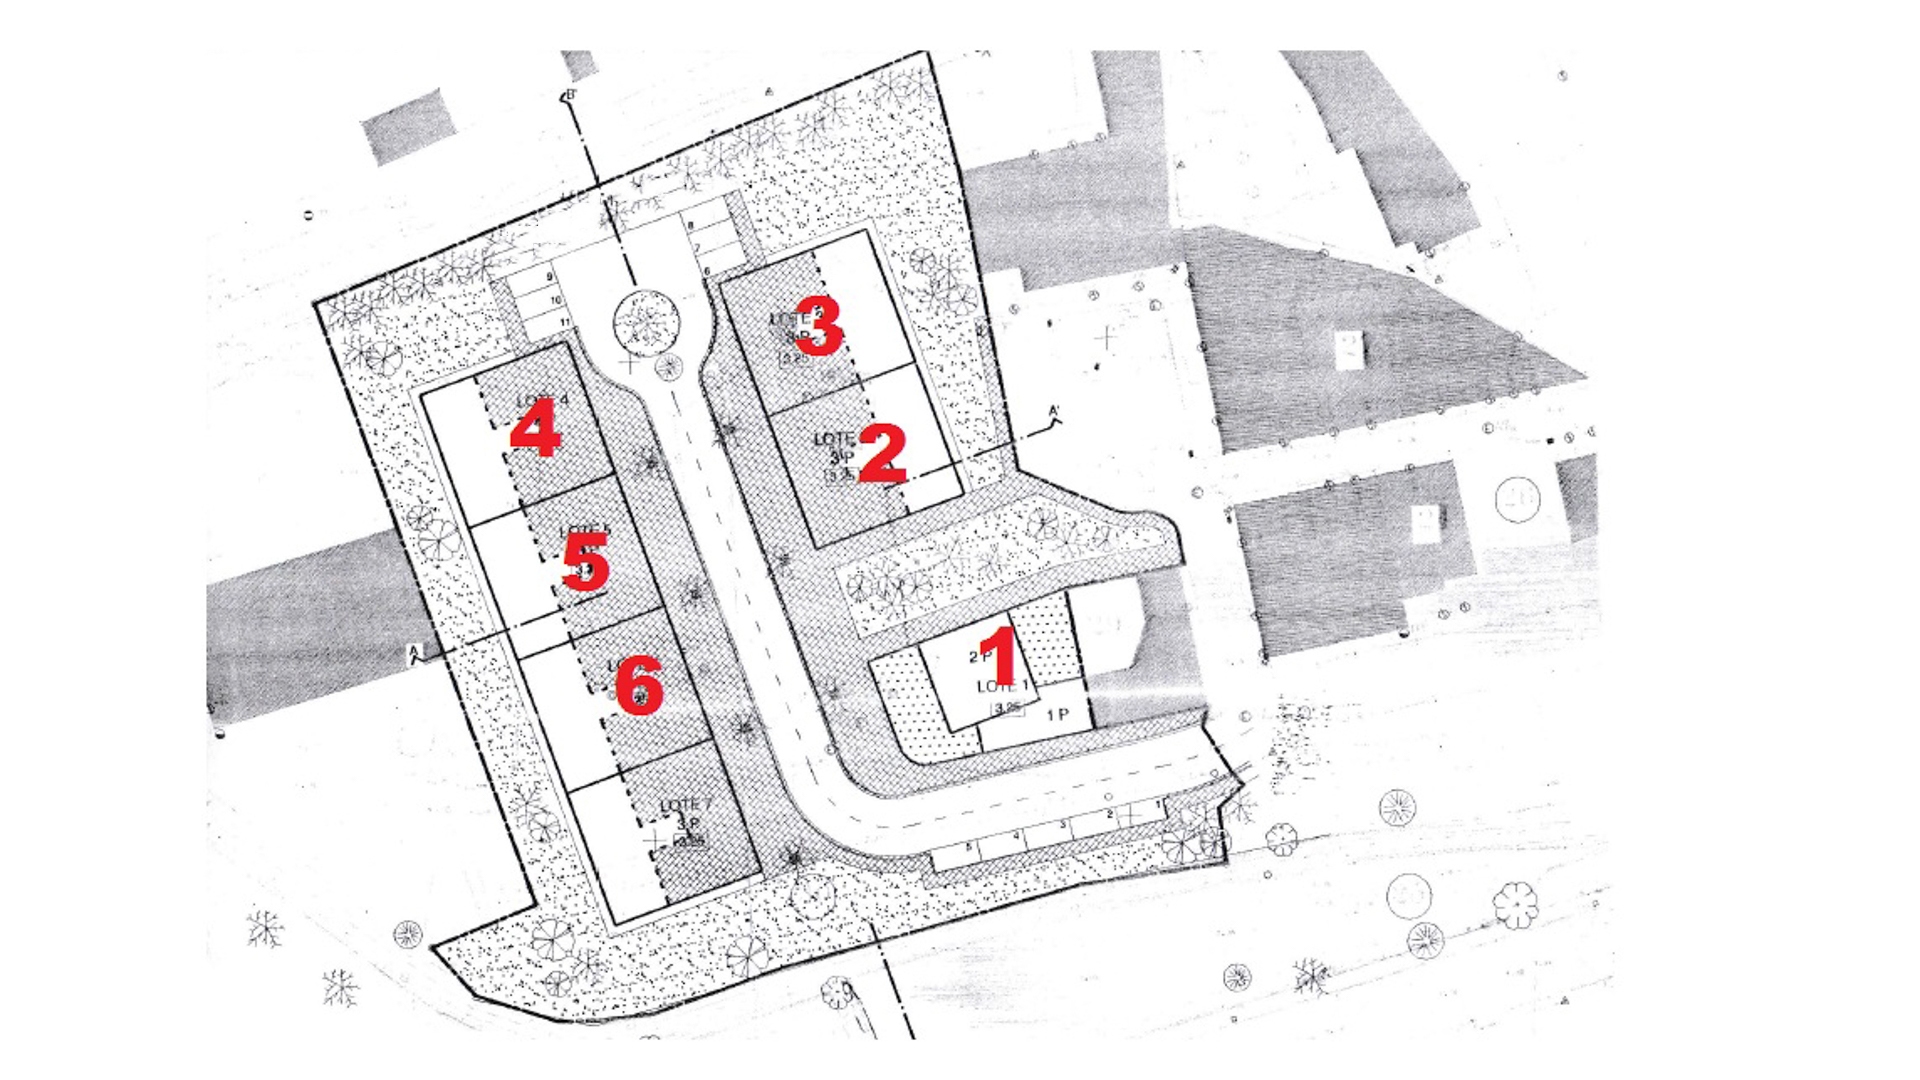 Projet de développement urbain à Parchal | LG1316 6 parcelles voisines avec la capacité de construire une grande villa individuelle de deux étages plus 5 appartements avec un total de 20 appartements individuels T2 et T3.